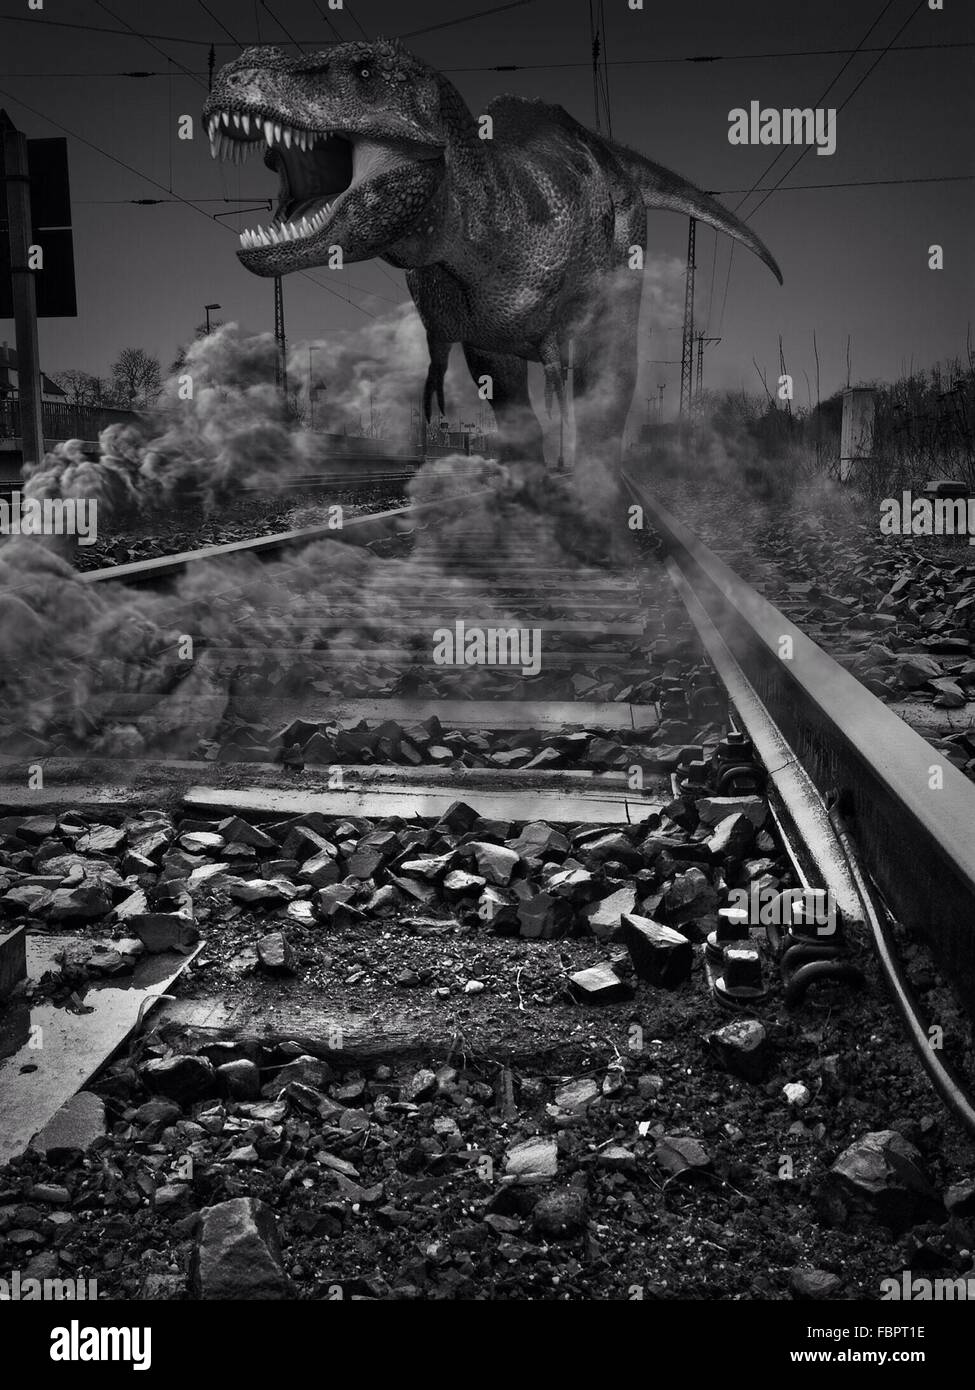 Tyrannosaurus Rex On Railroad Tracks Stock Photo